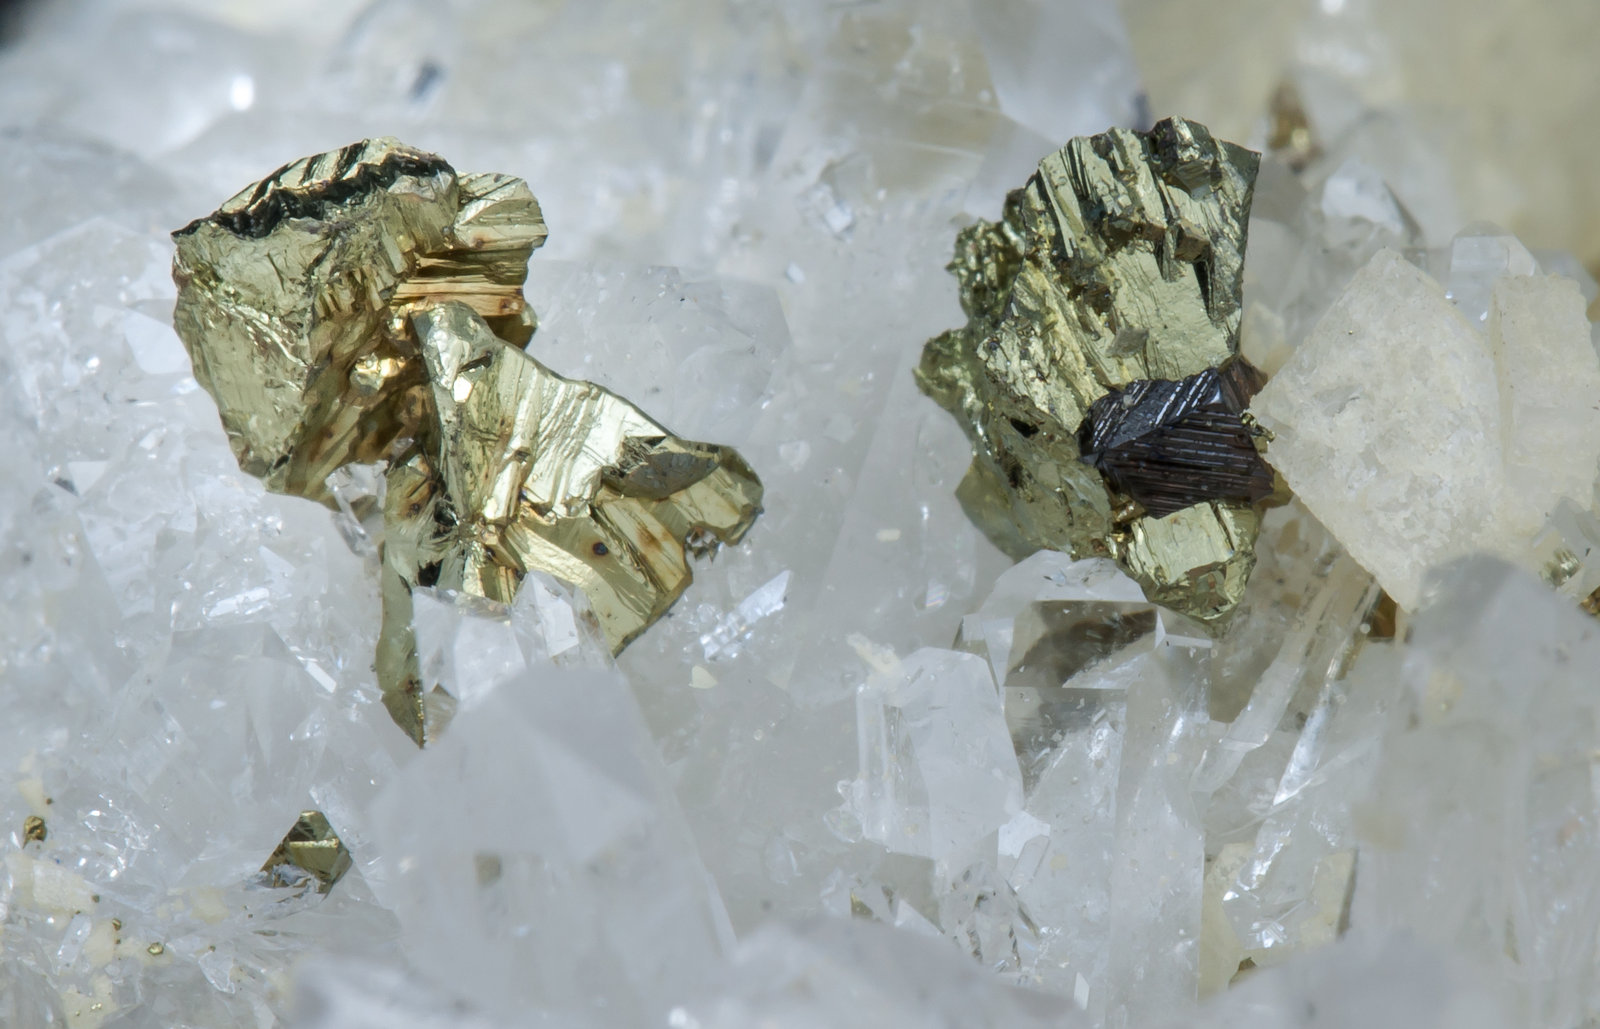 specimens/s_imagesAJ7/Chalcopyrite-NA14AJ7d.jpg